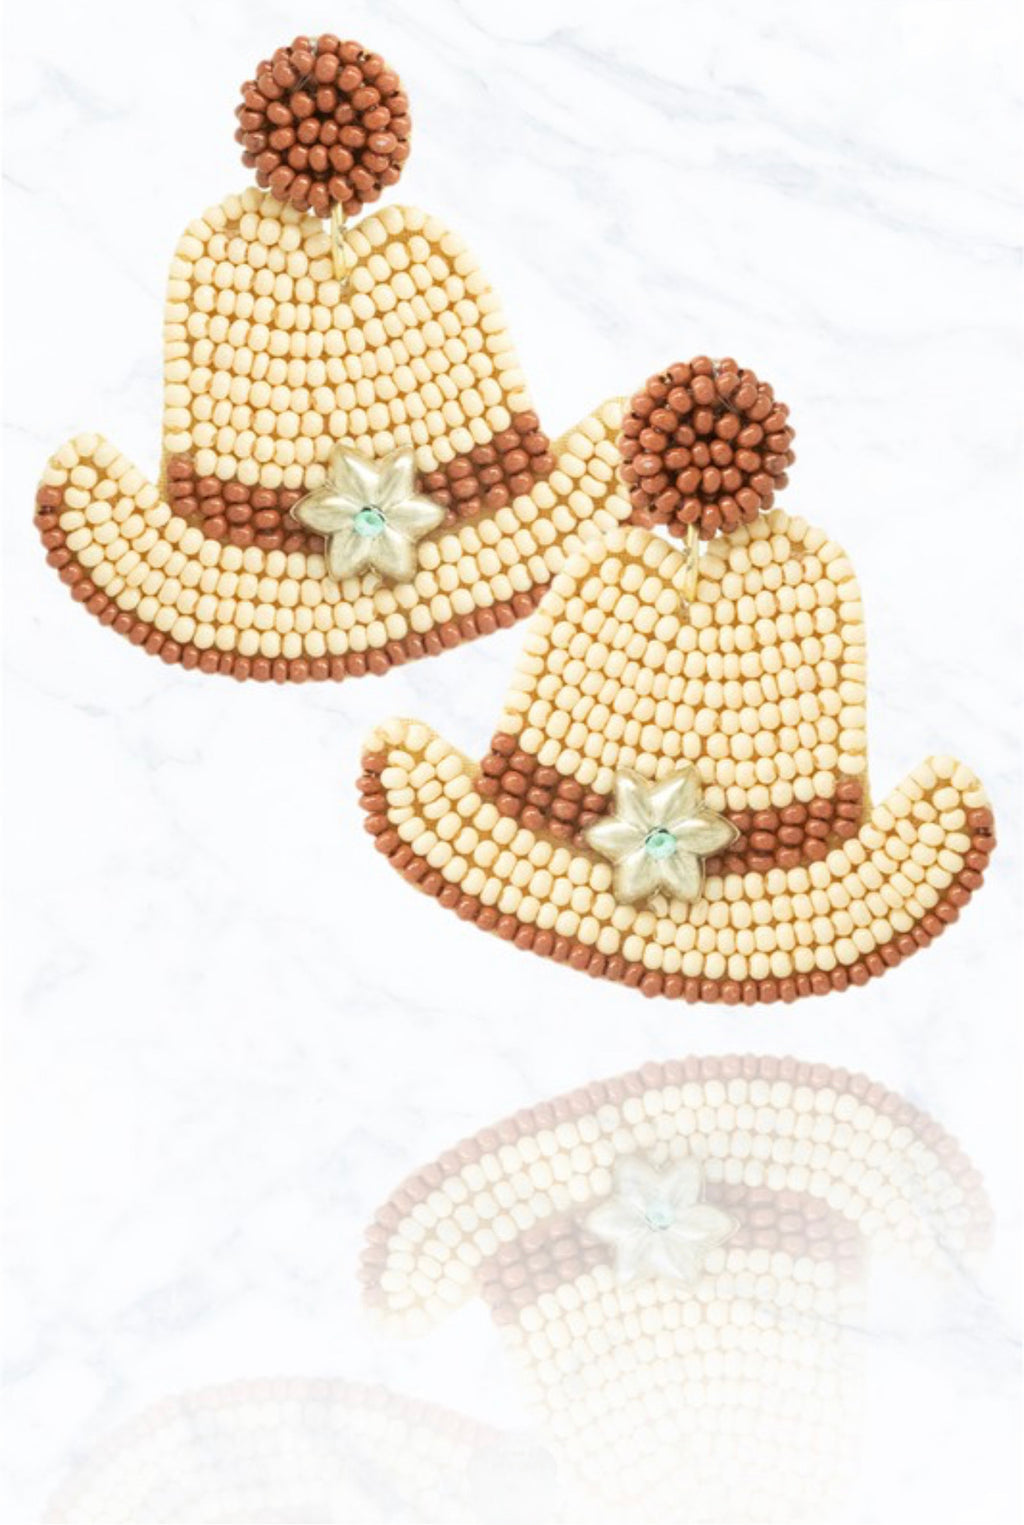 Cowgirl Hat Earrings